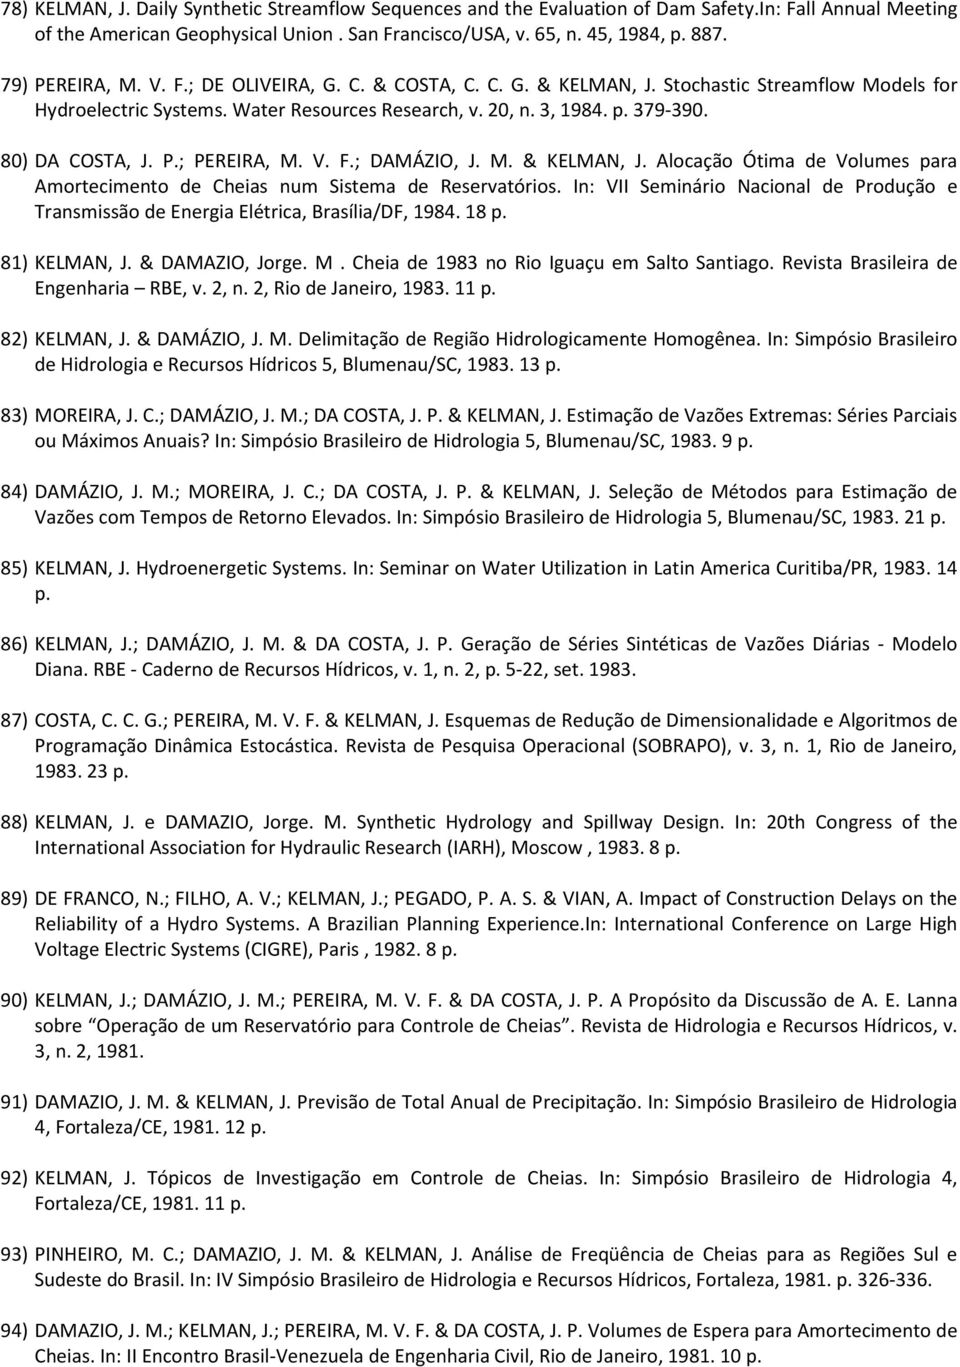 80) DA COSTA, J. P.; PEREIRA, M. V. F.; DAMÁZIO, J. M. & KELMAN, J. Alocação Ótima de Volumes para Amortecimento de Cheias num Sistema de Reservatórios.